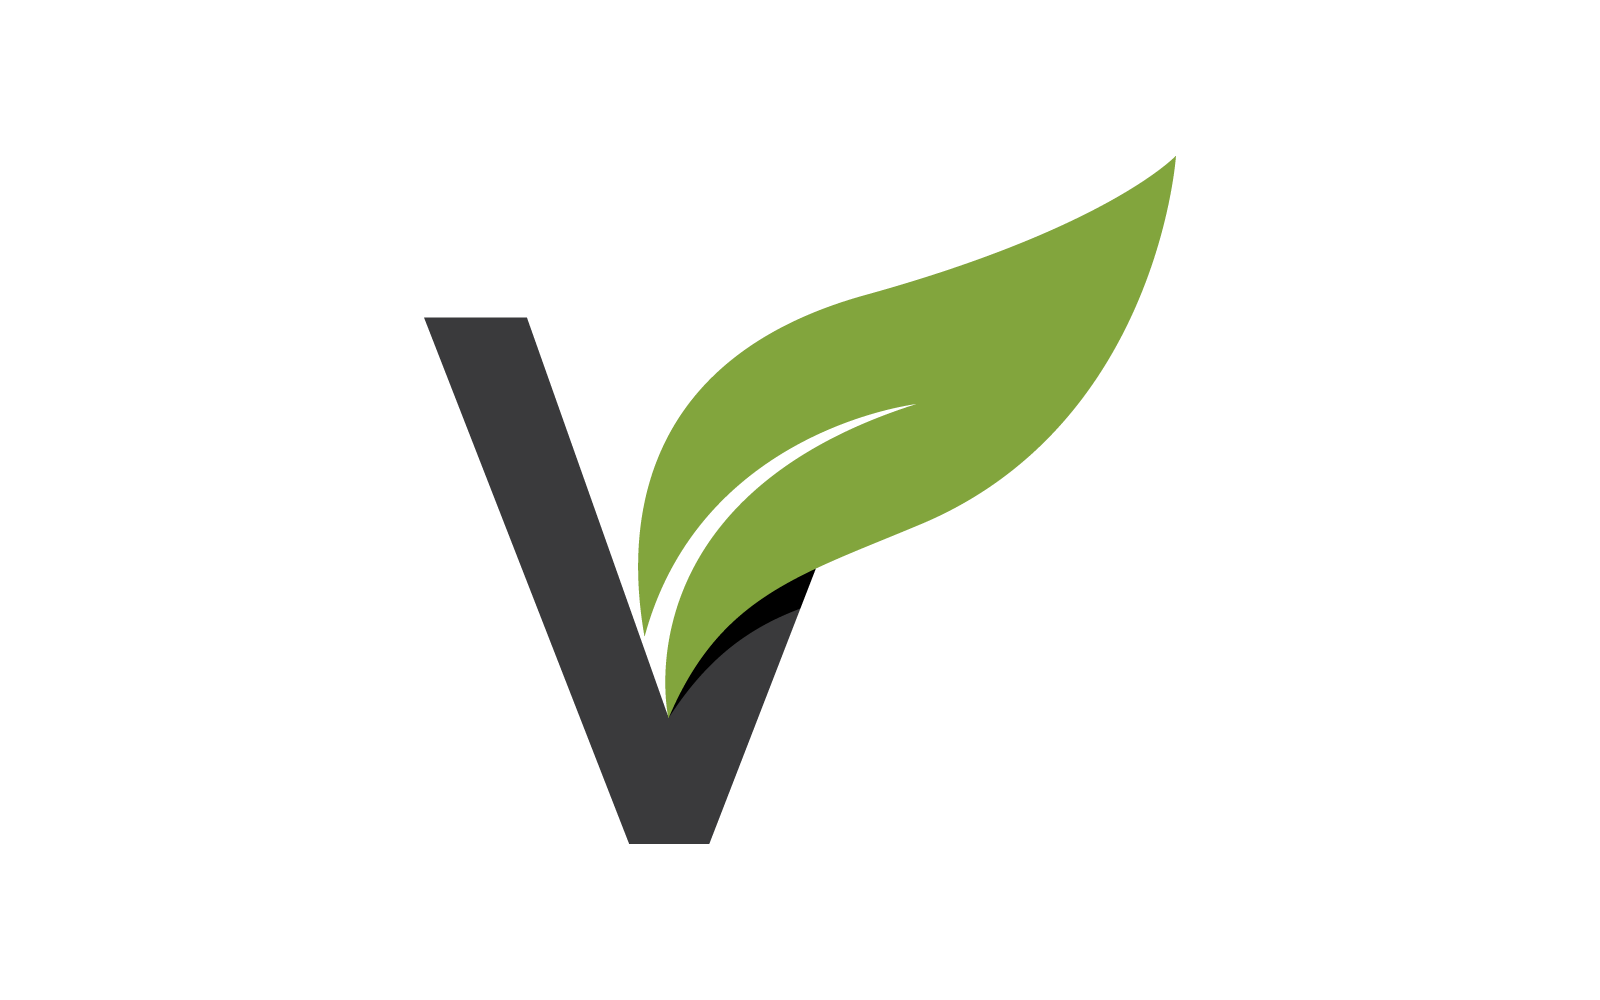 V Initial letter with green leaf logo vector flat design